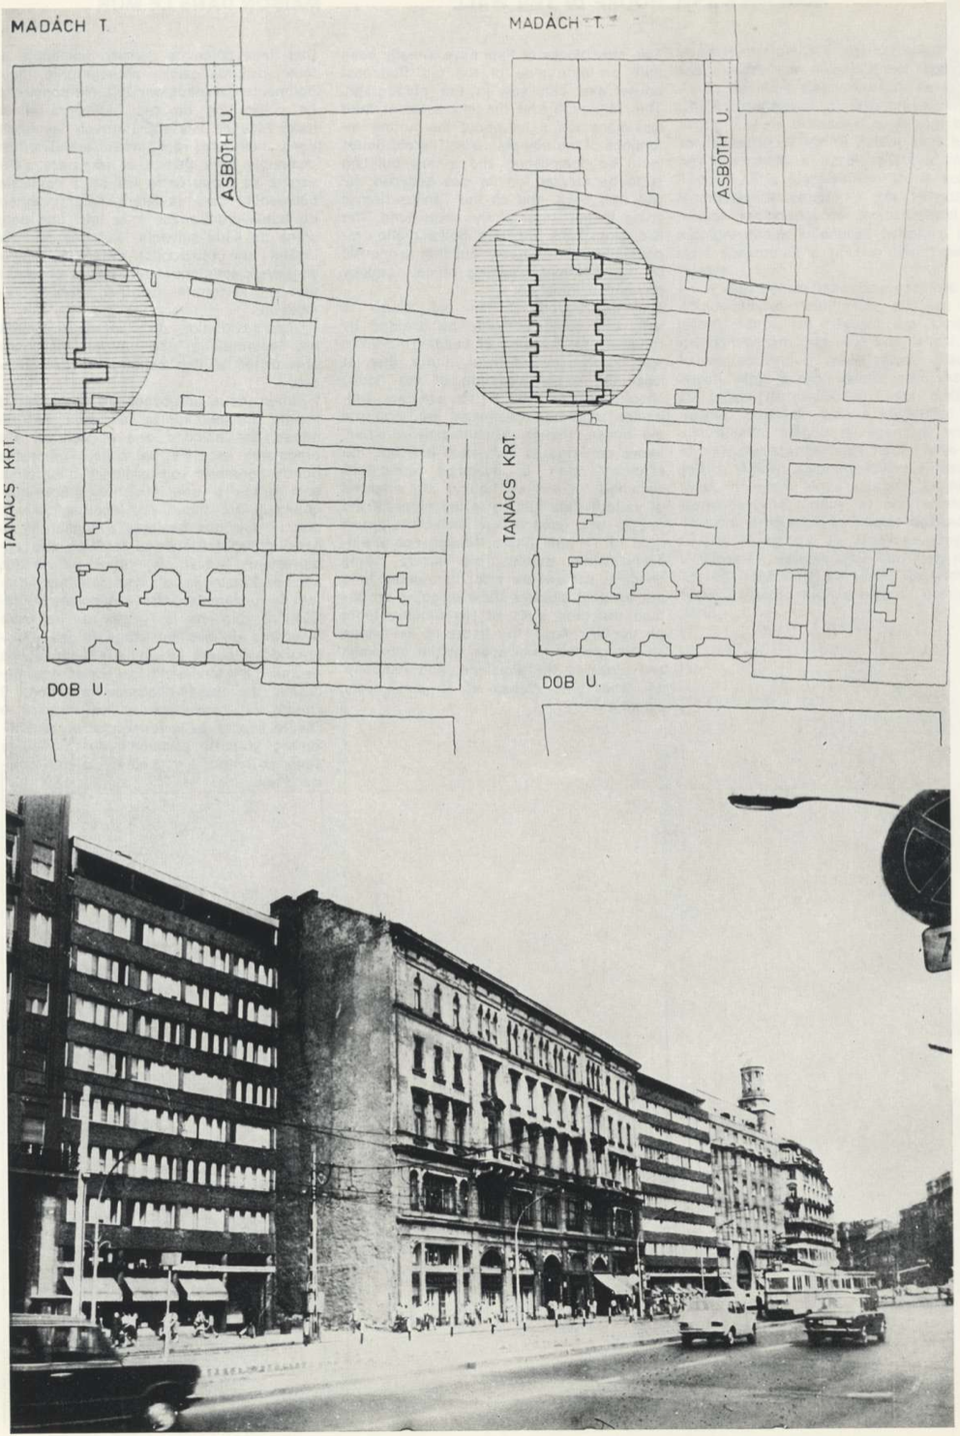 Ház a falban – forrás: Rajk László: 5 terv, saját kiadású katalógus Beke László bevezetőjével, 1977